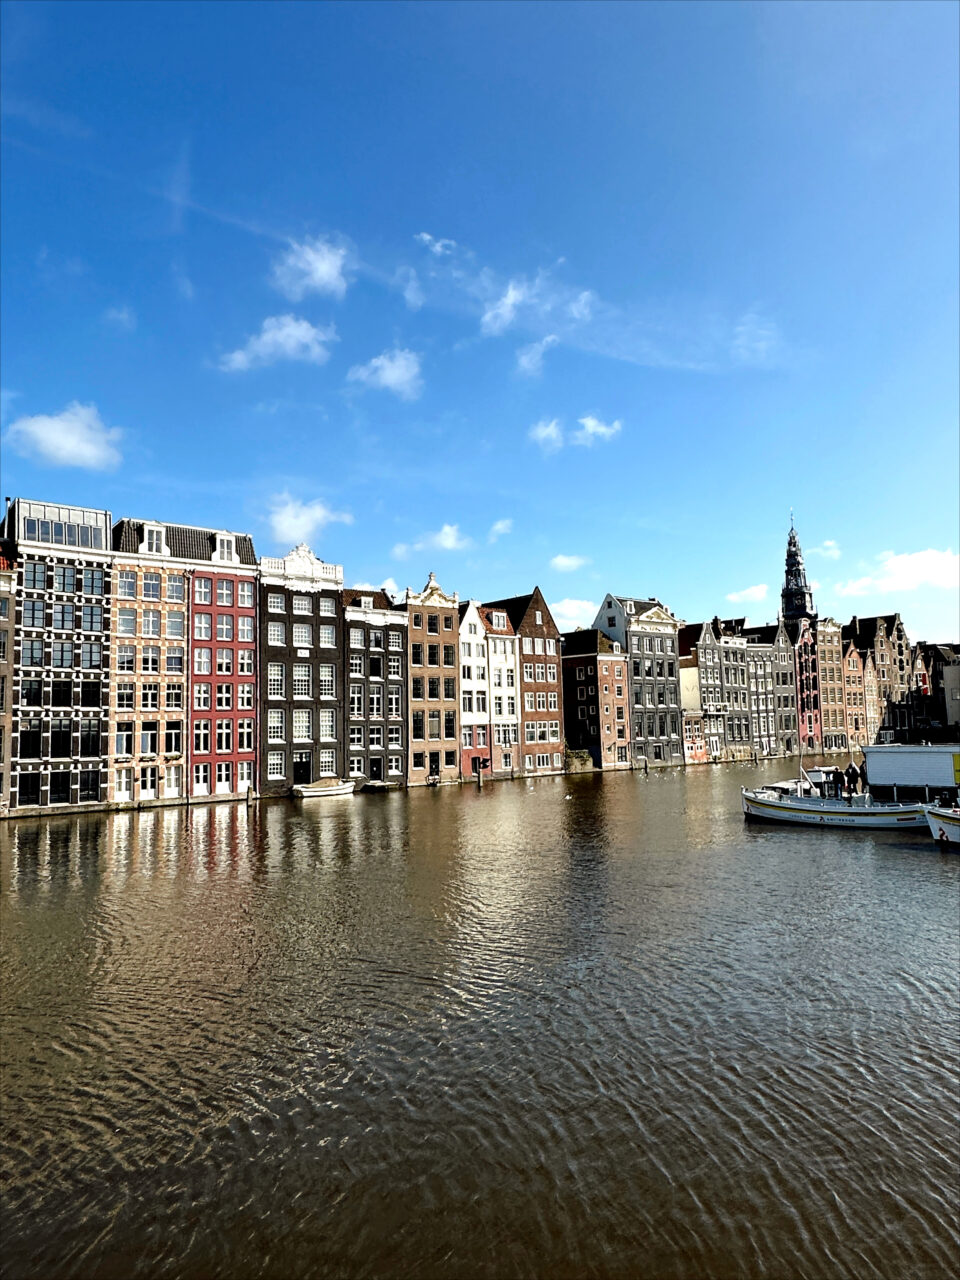 Hus som er bygd tett sammen over en elv i Amsterdam. Foto